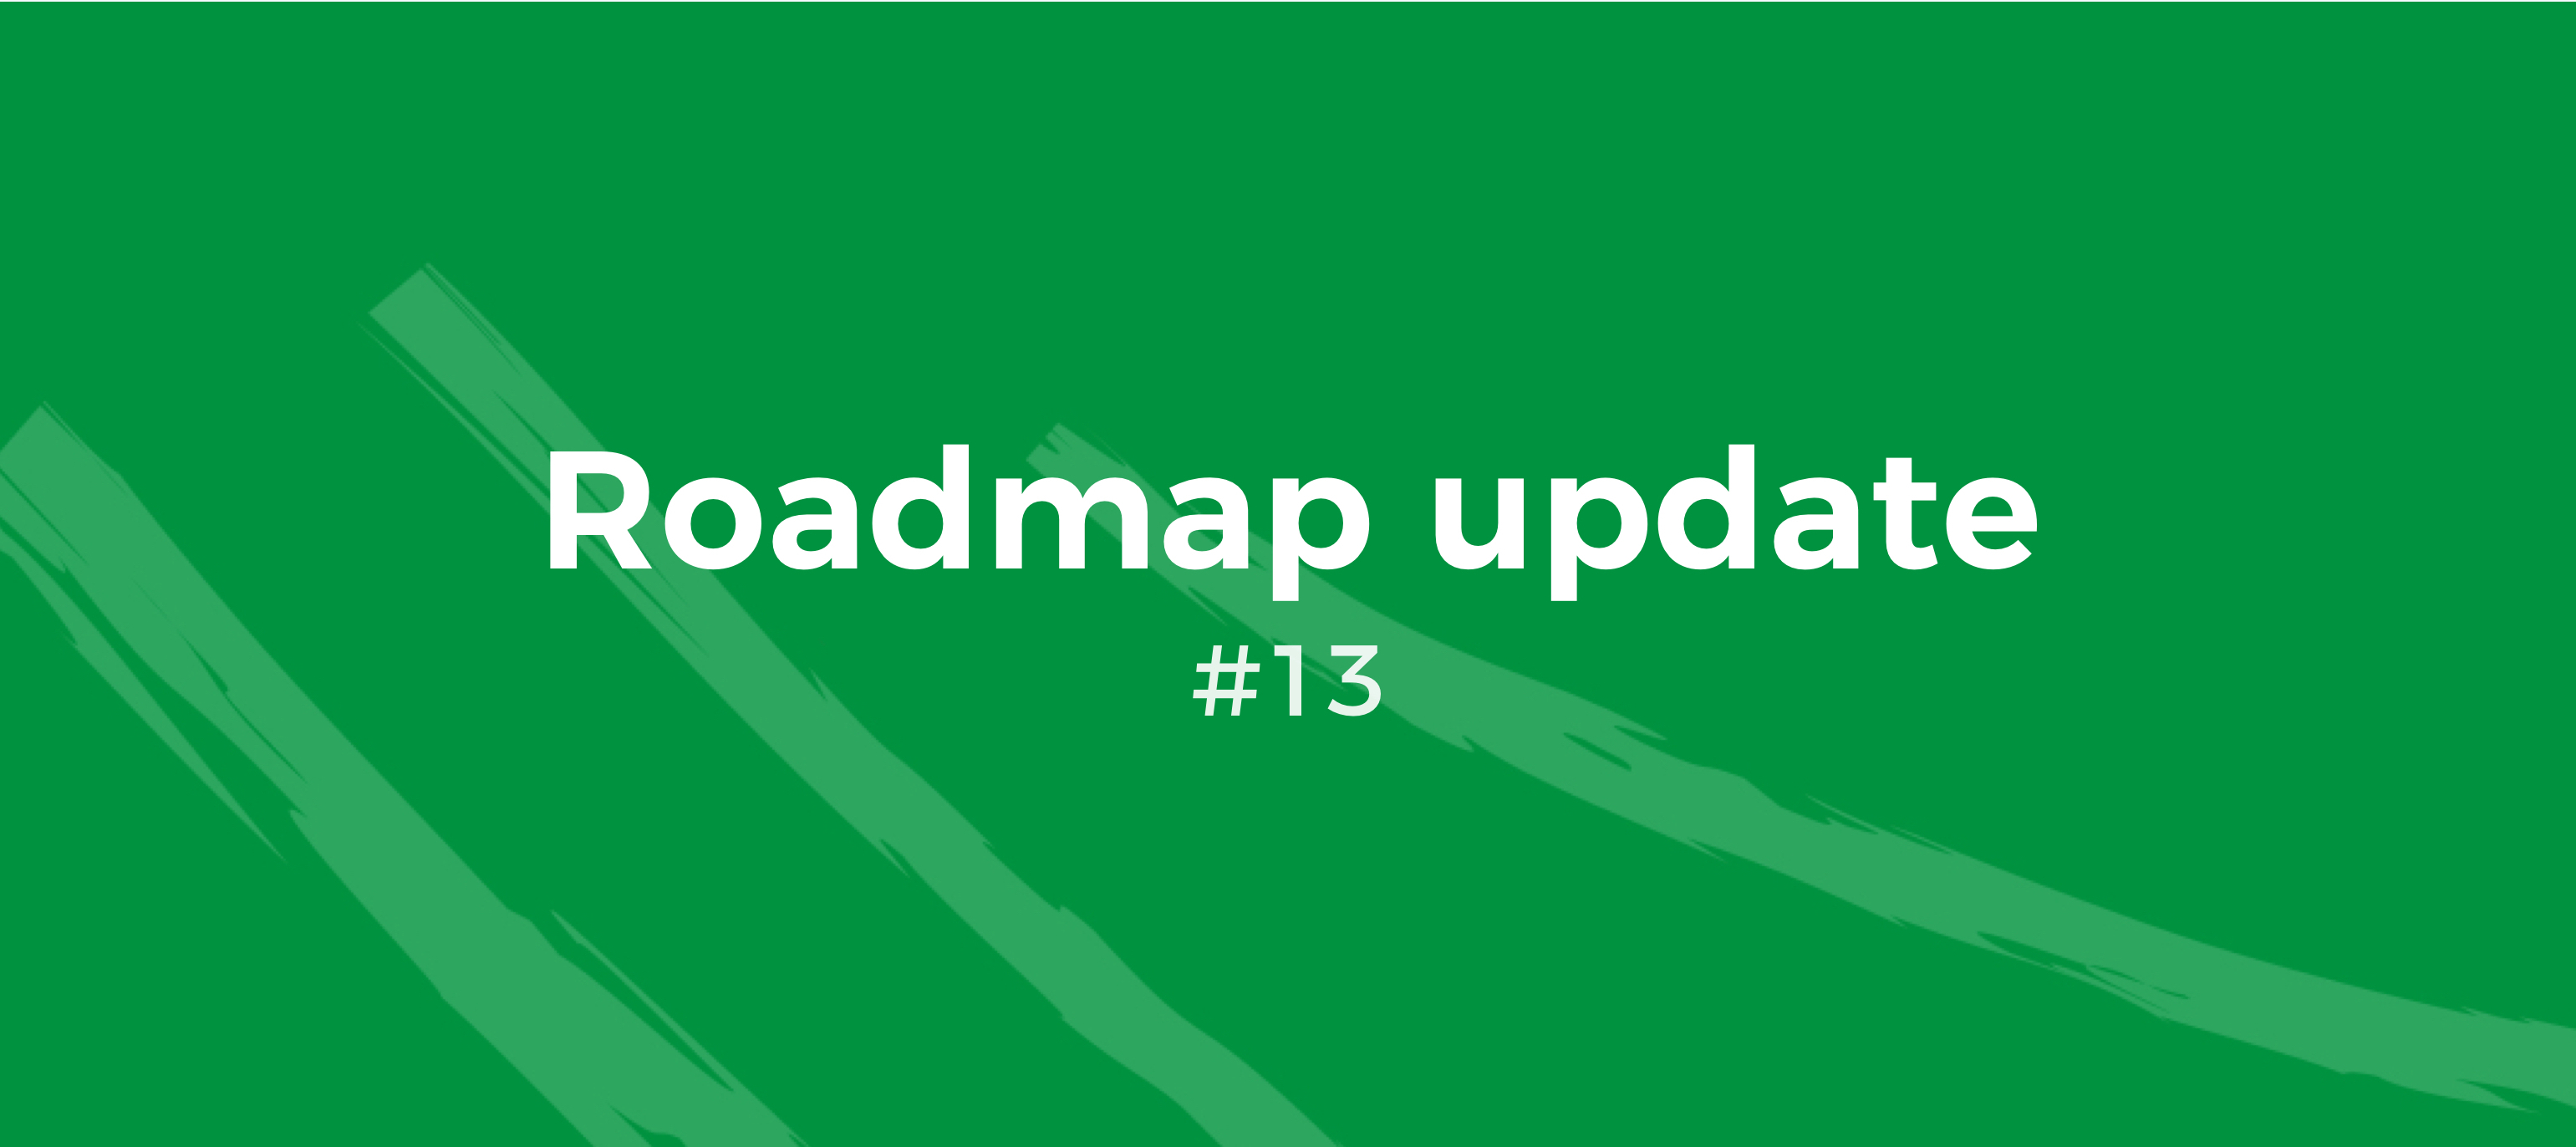 Roadmap Update #13